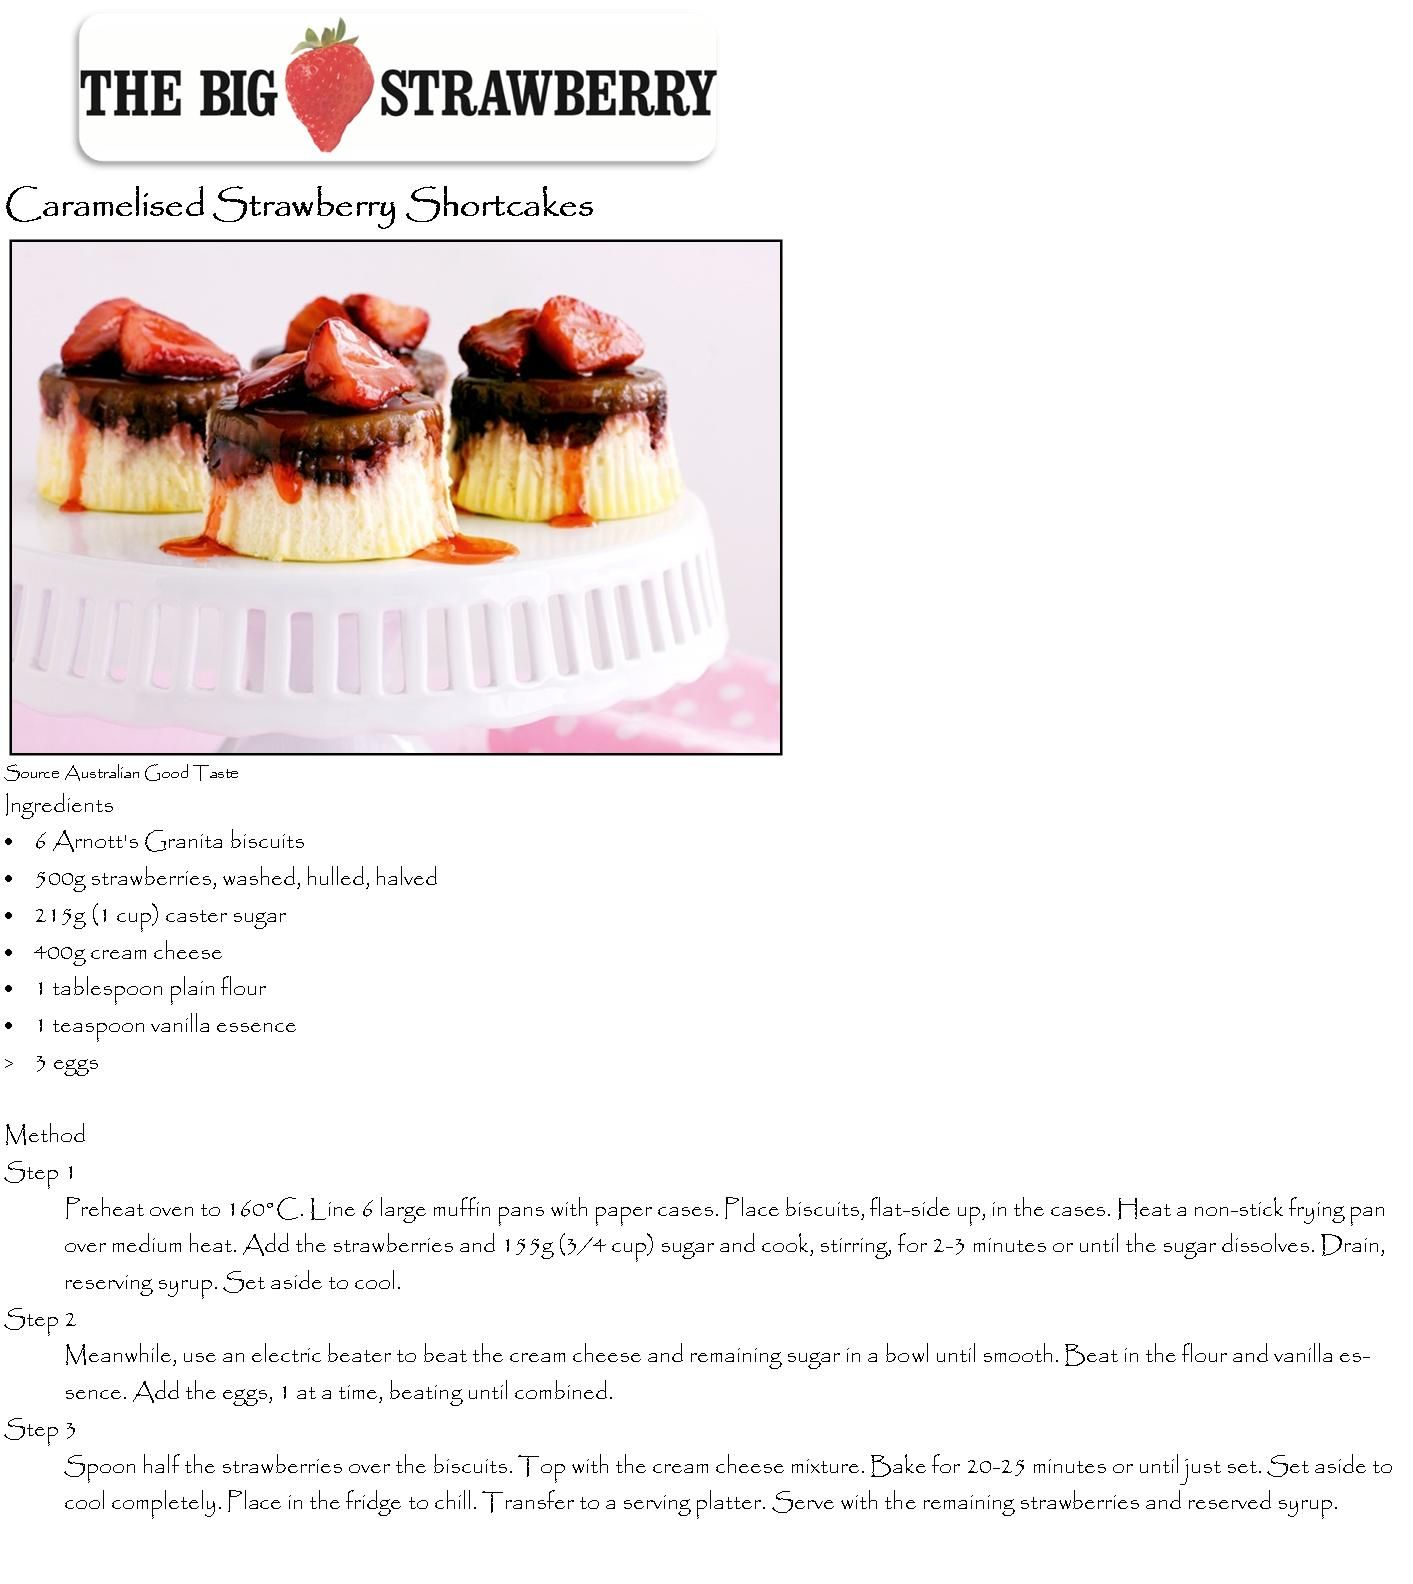 Caramelized Strawberry Shortcakes